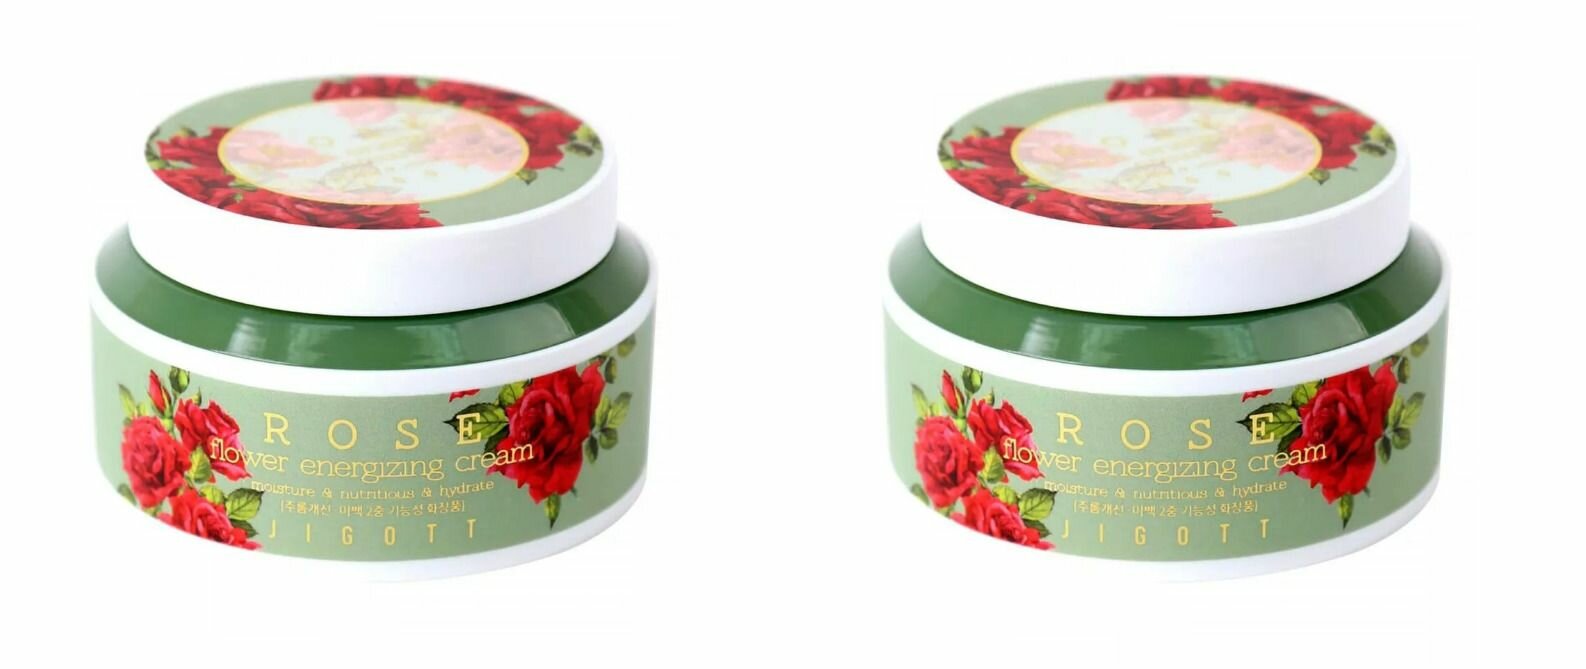 Jigott Крем для лица с экстрактом розы, Rose Flower Energizing Cream, 100 мл, 2 шт.